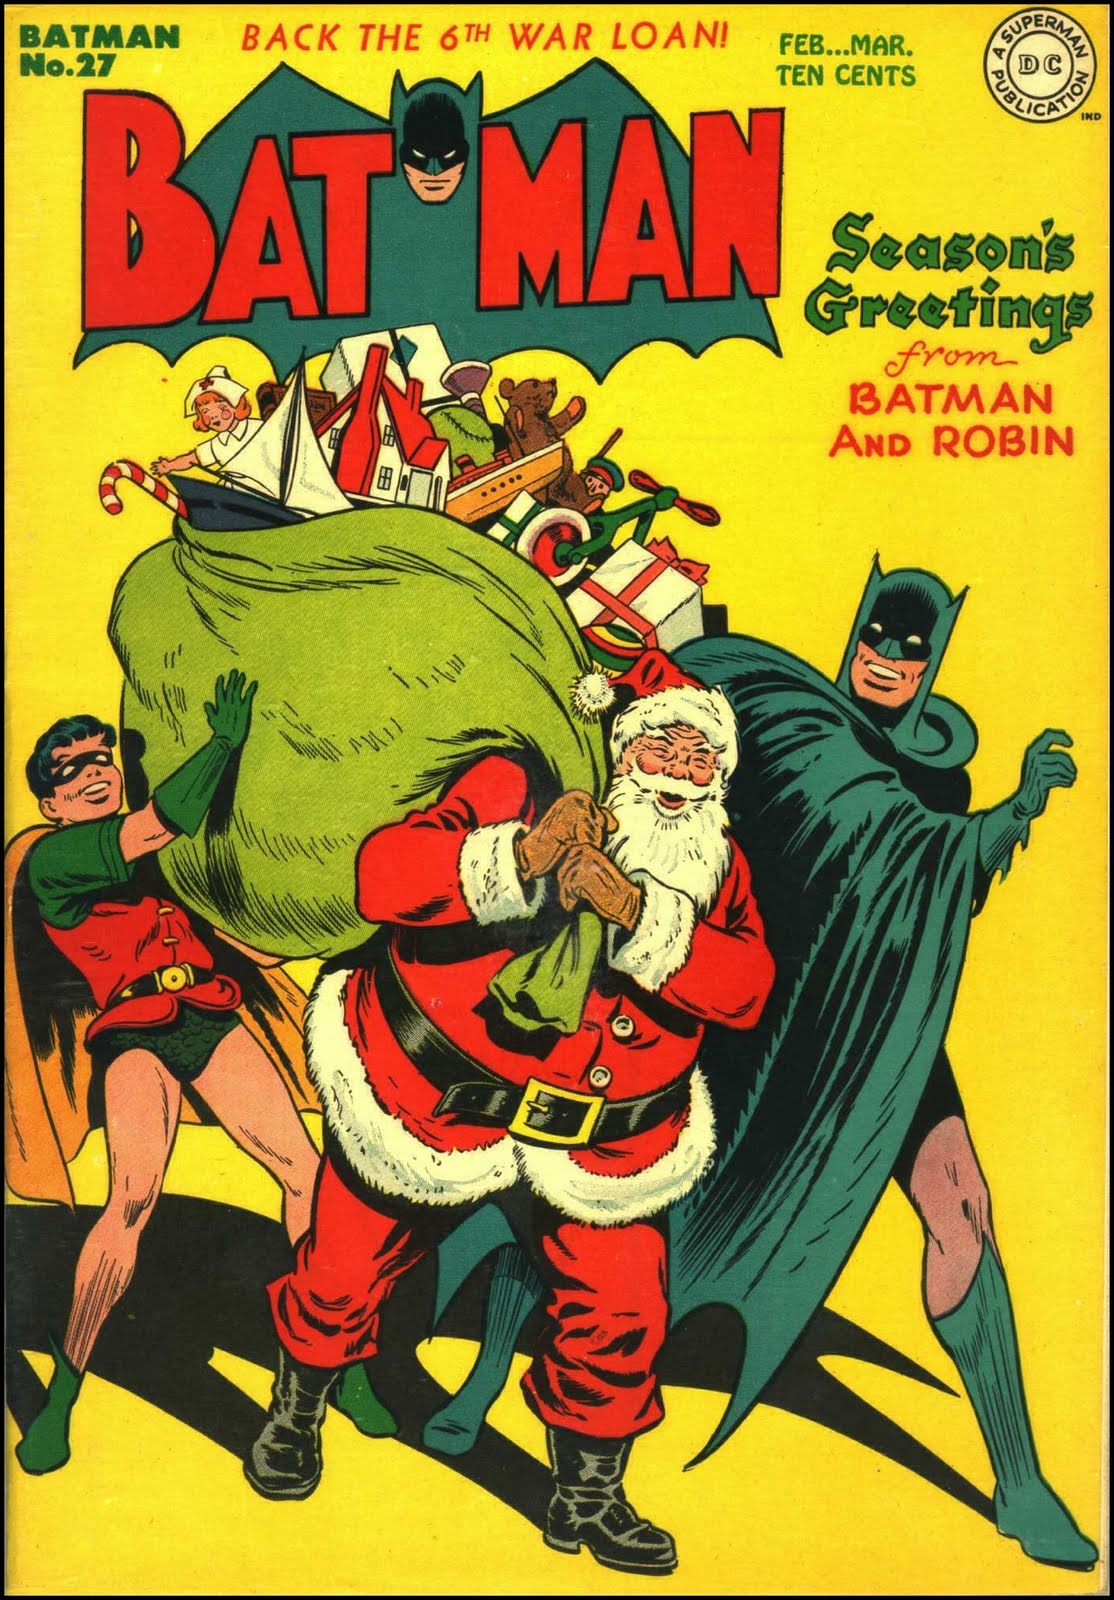 Santa with Batman and Robin